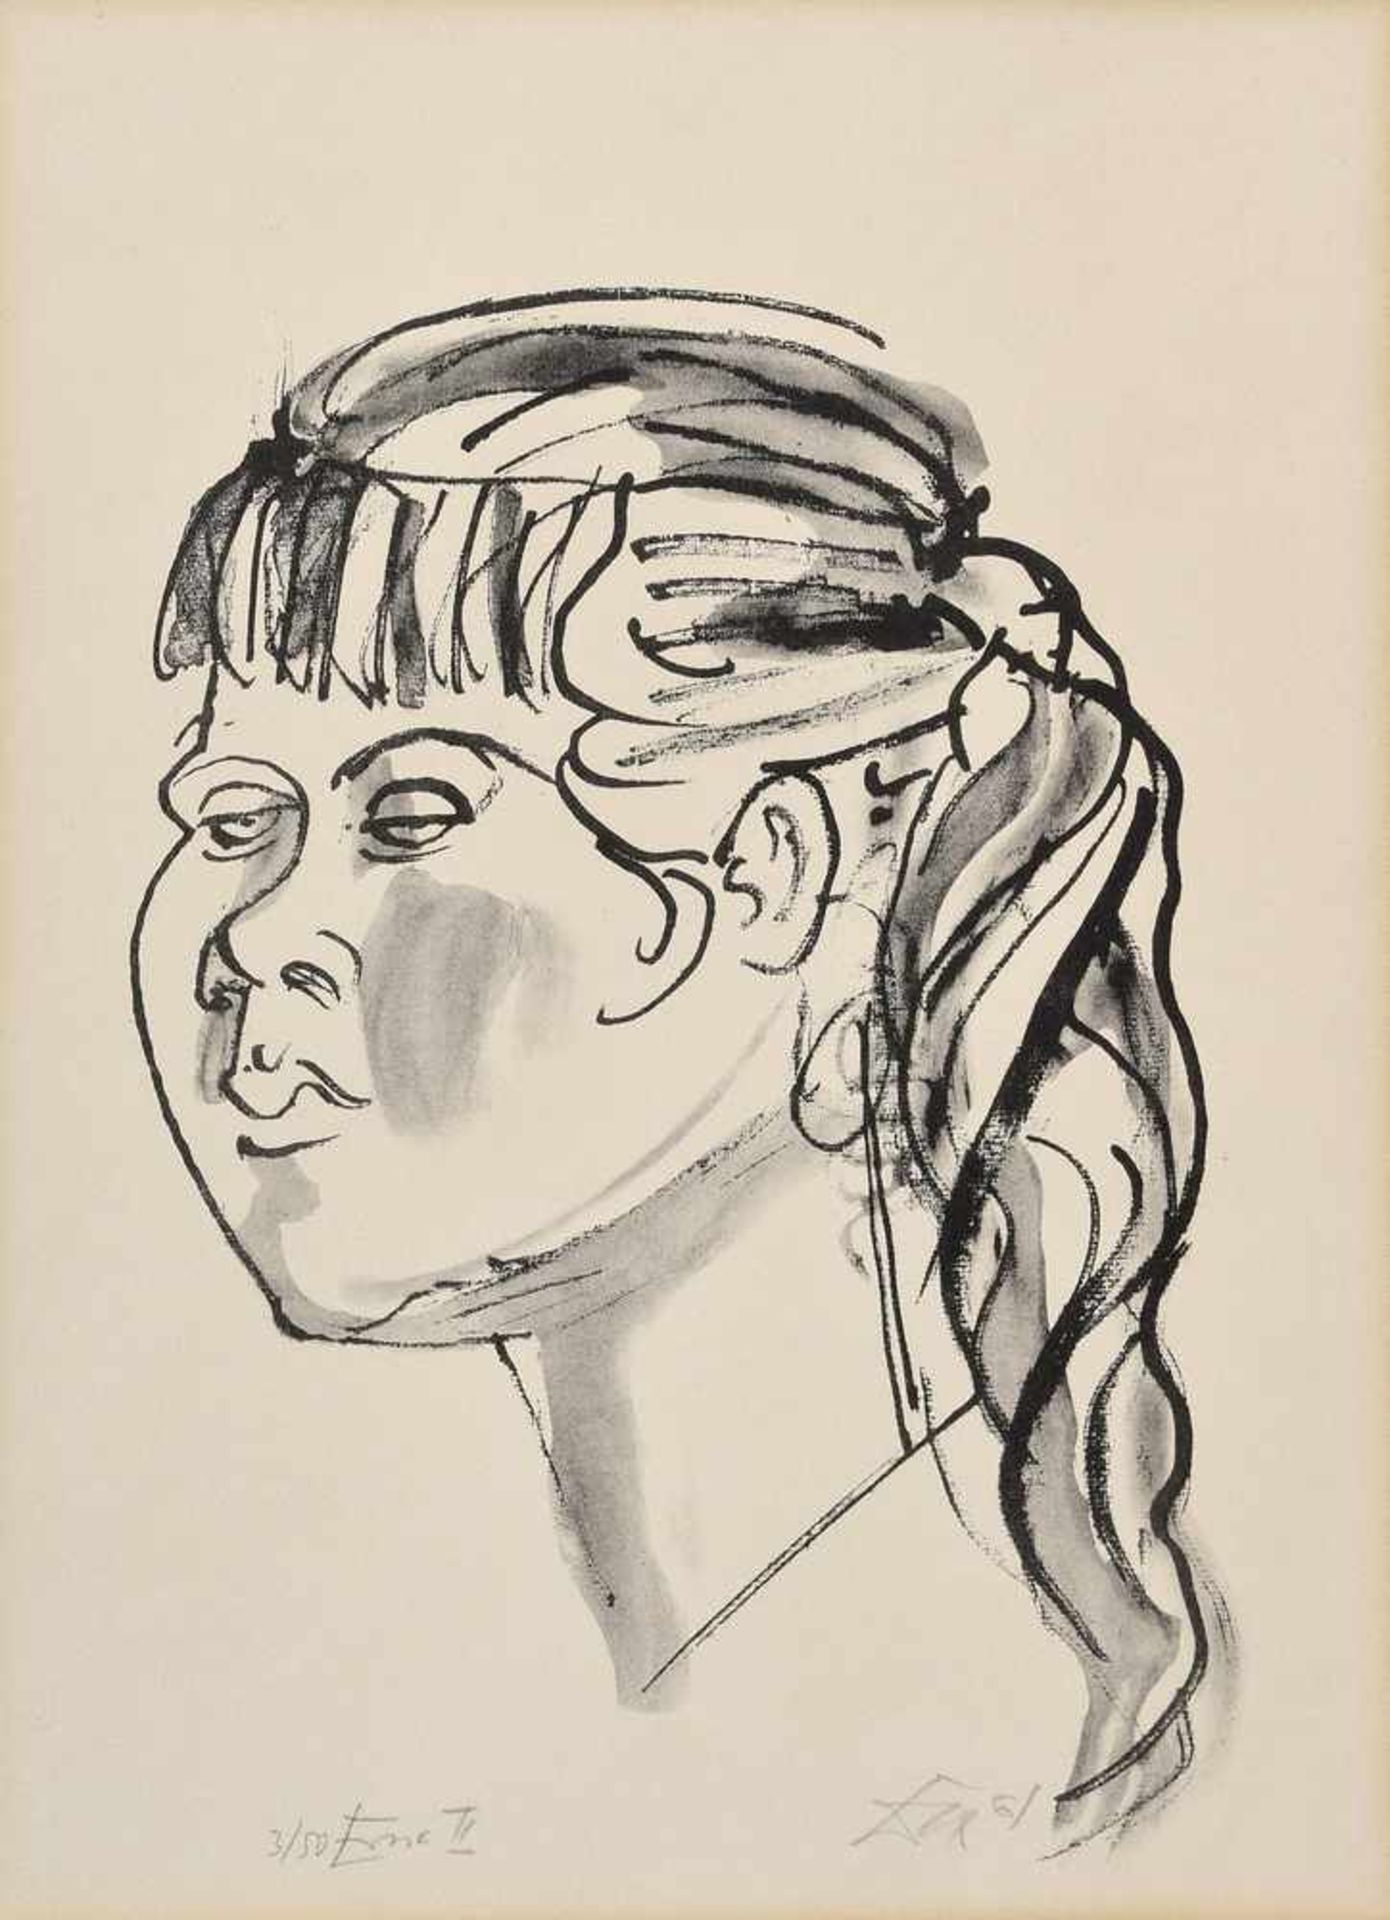 Dix, Otto (1891-1969) "Erna II - Mädchen mit dunkleren Haaren" 1961, Lithographie 3/50, u.l. num./